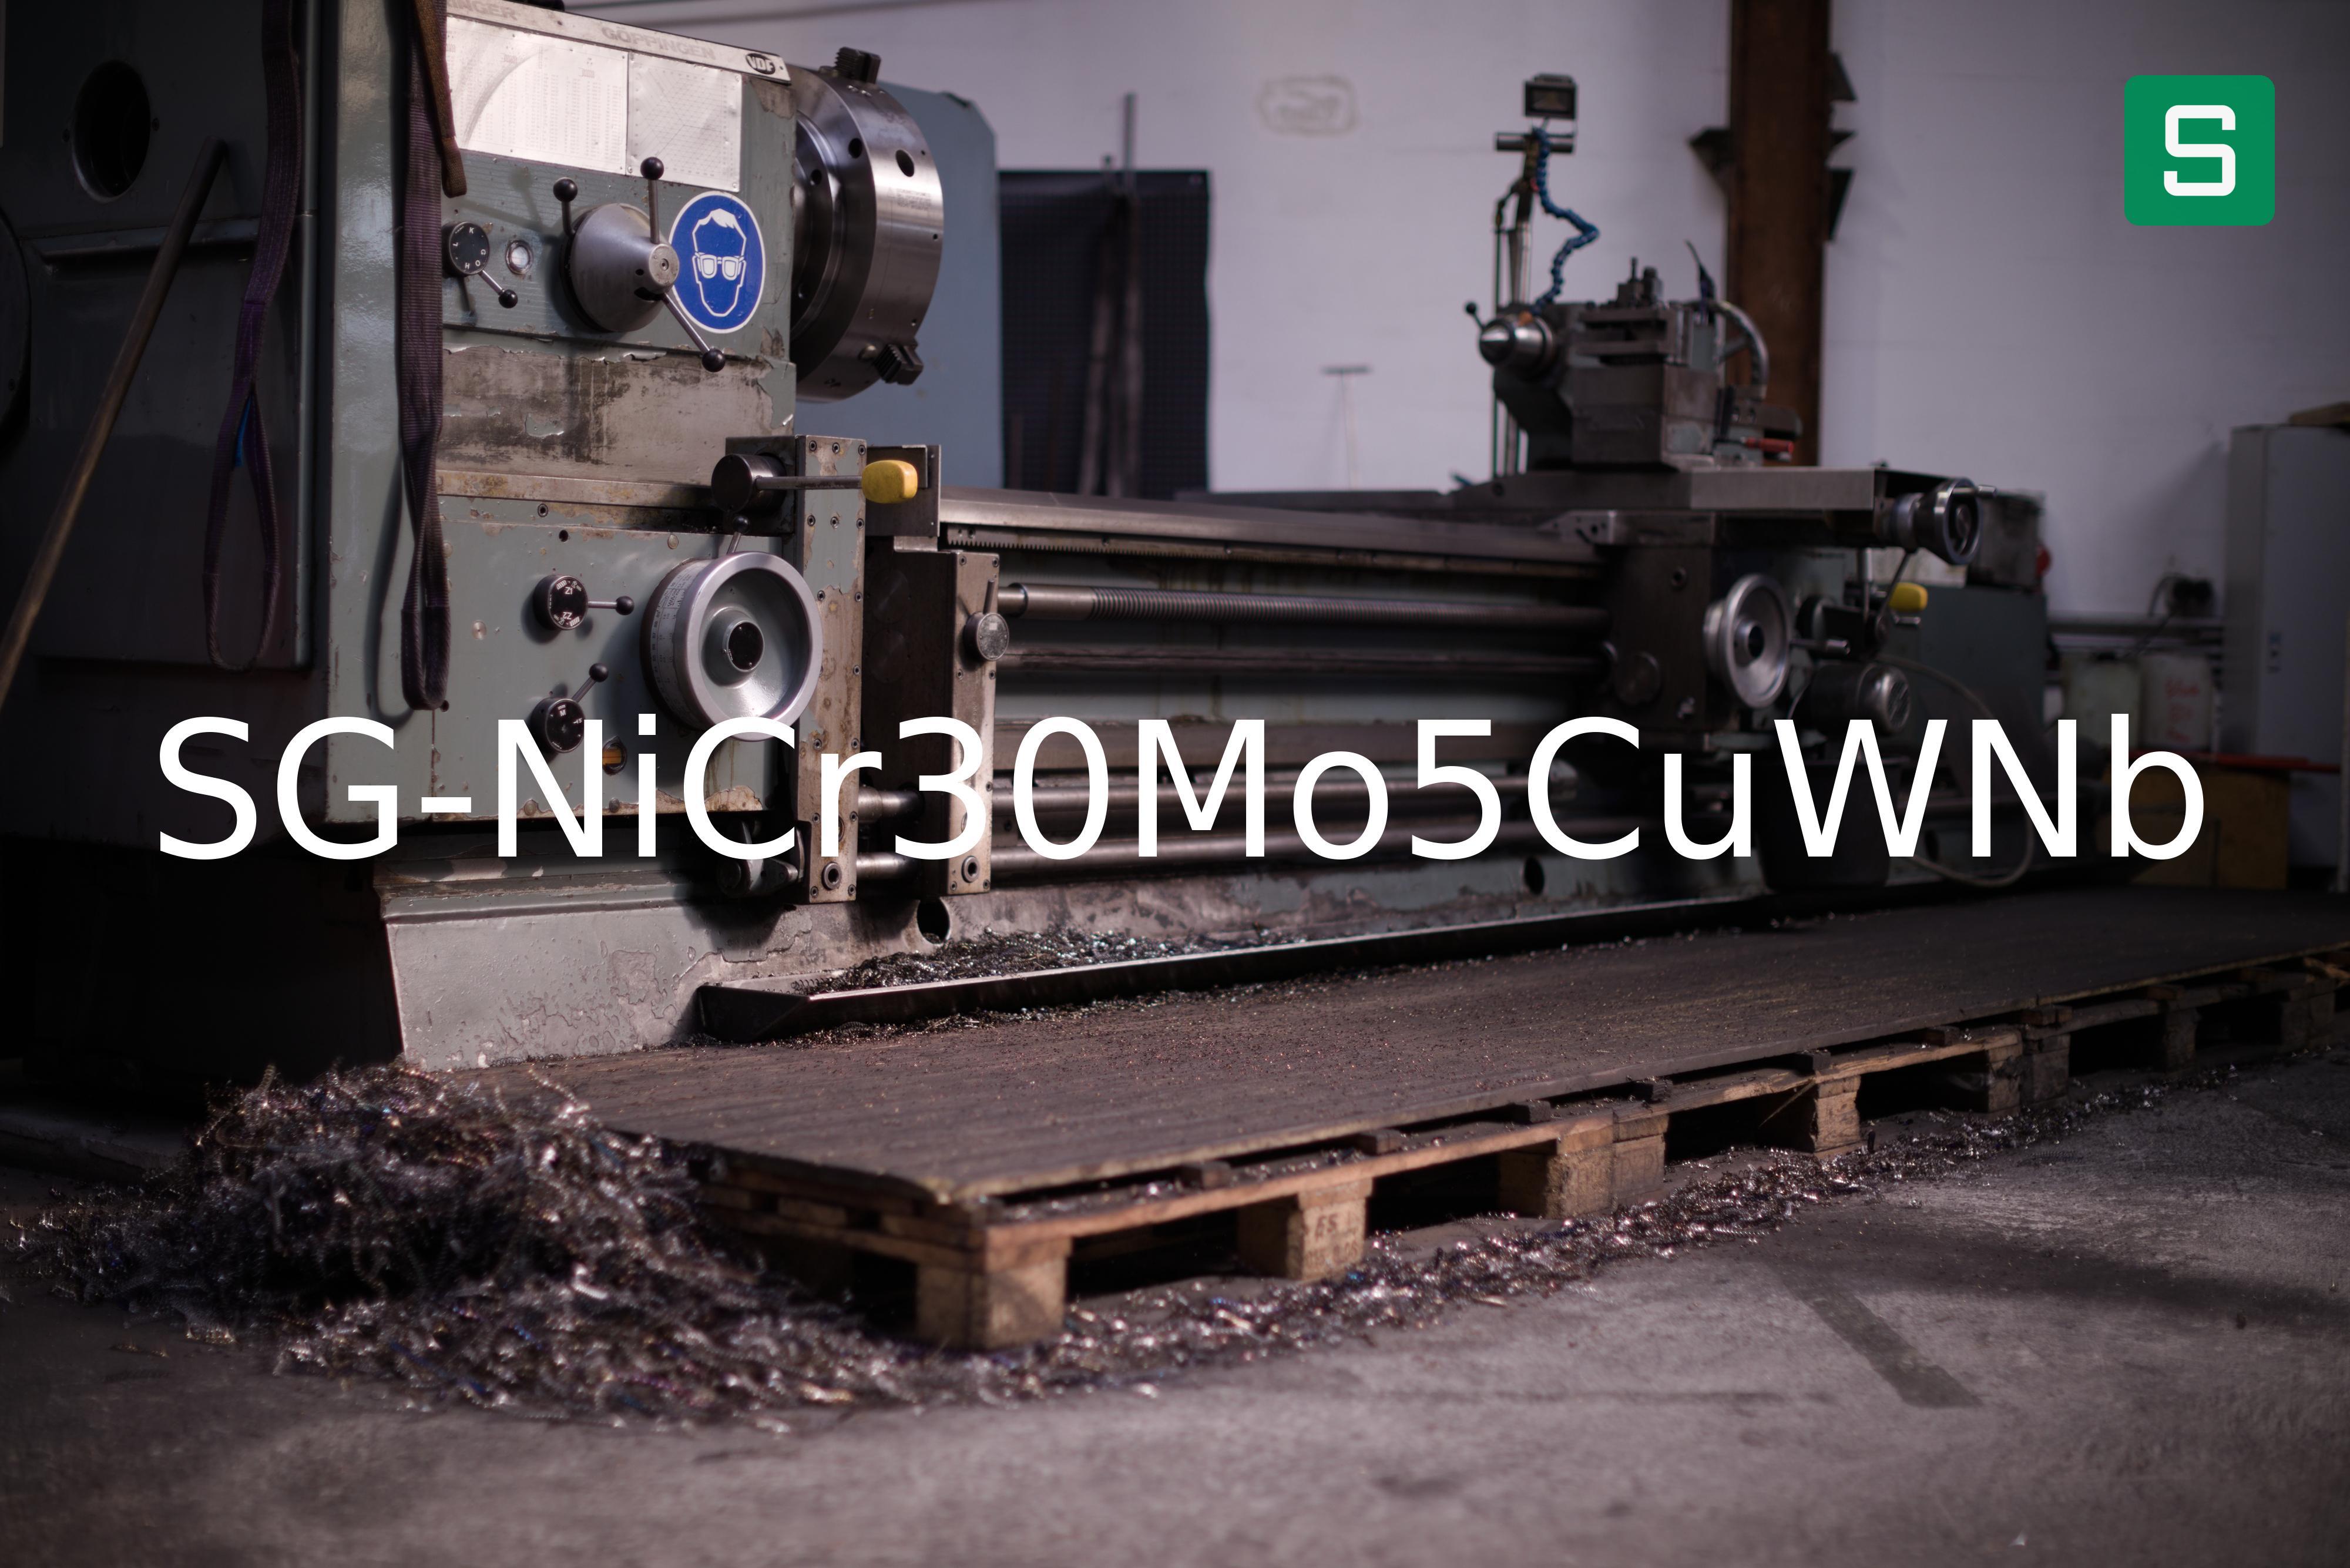 Stahlwerkstoff: SG-NiCr30Mo5CuWNb